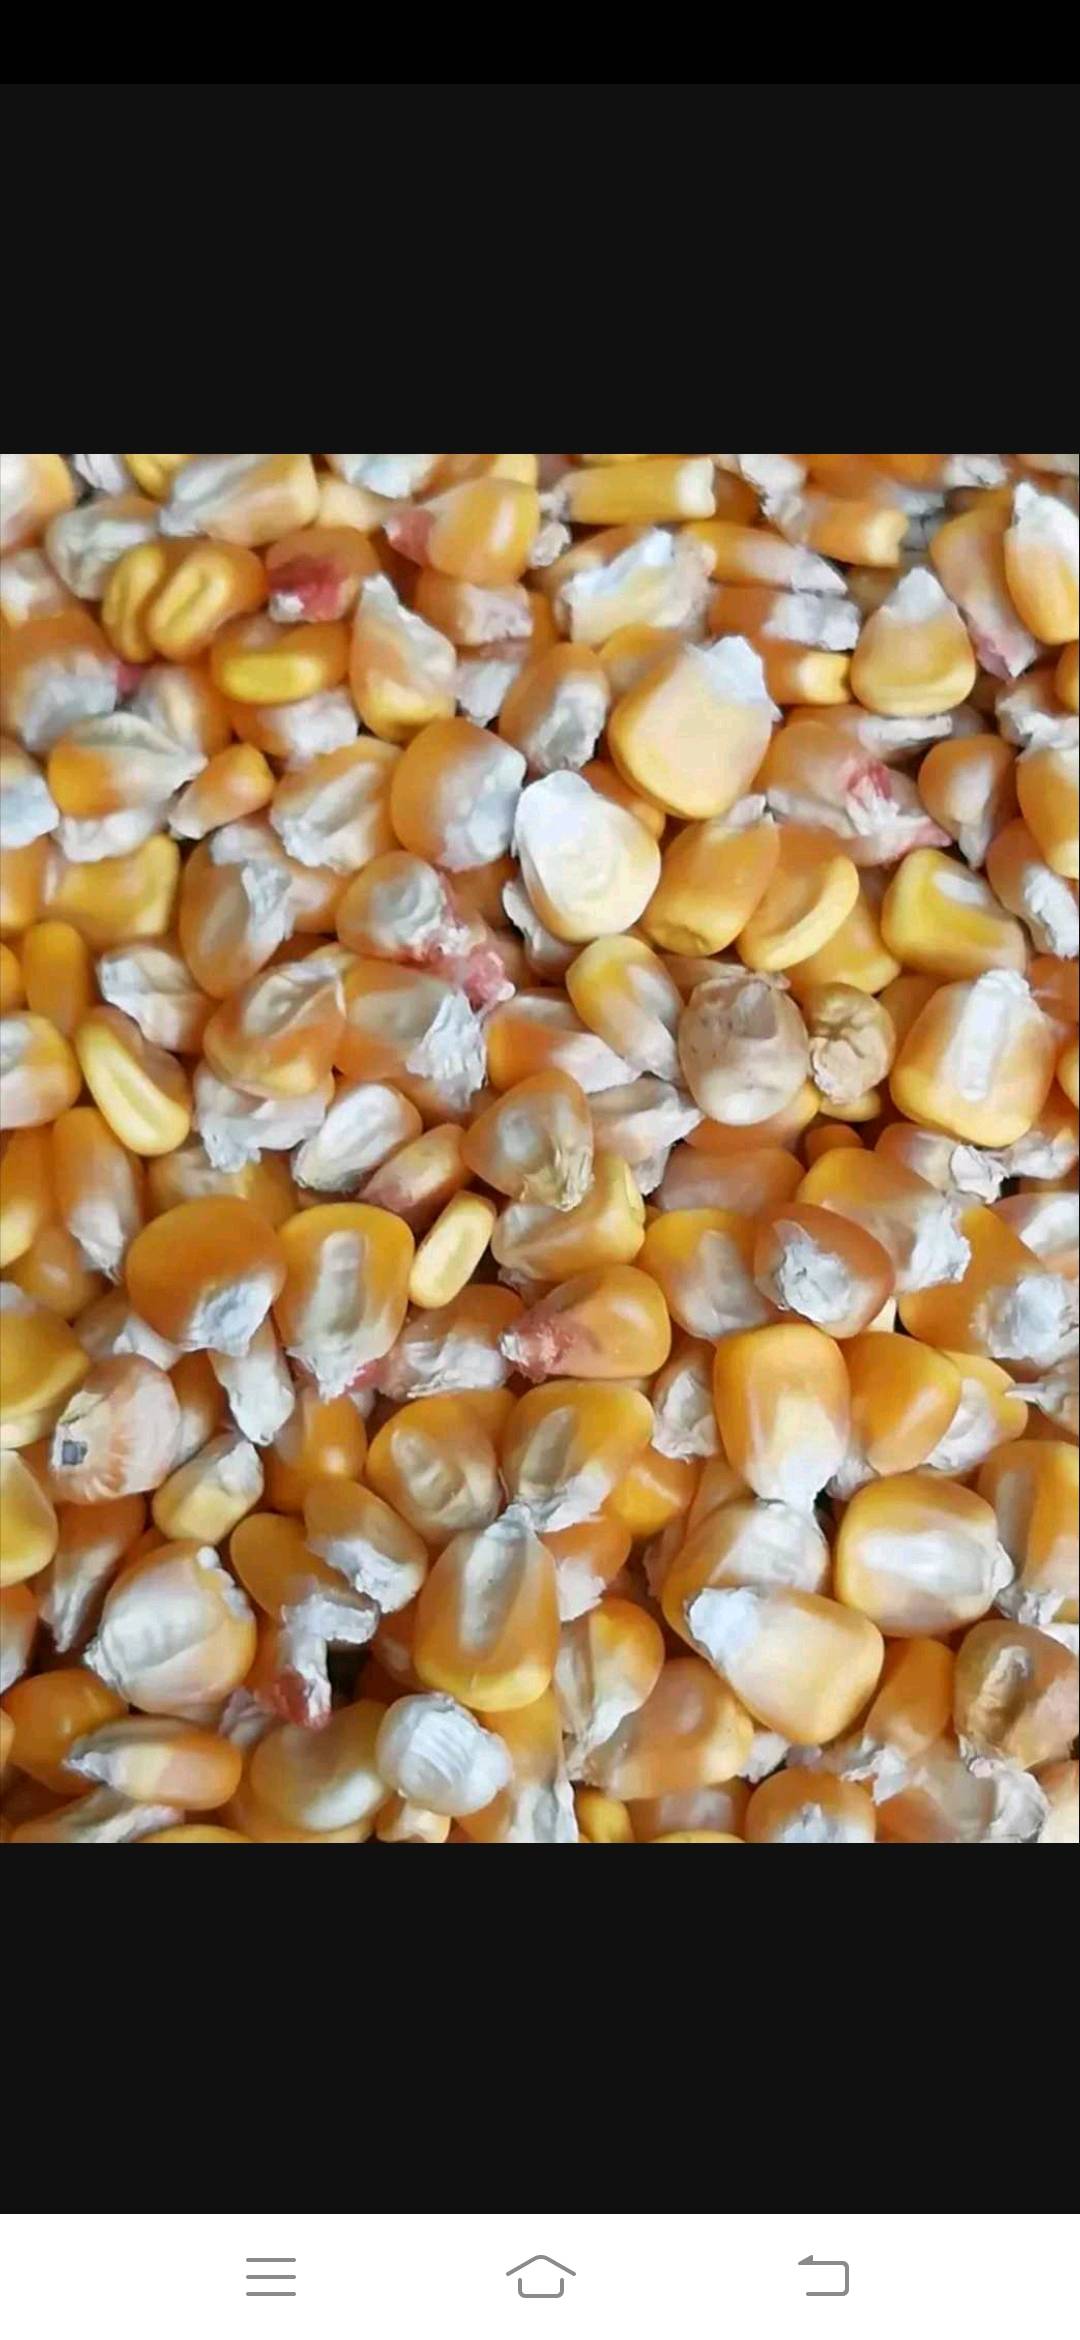 大量出售玉米粒.玉米棒，小麦。质量有保证，价格美丽。